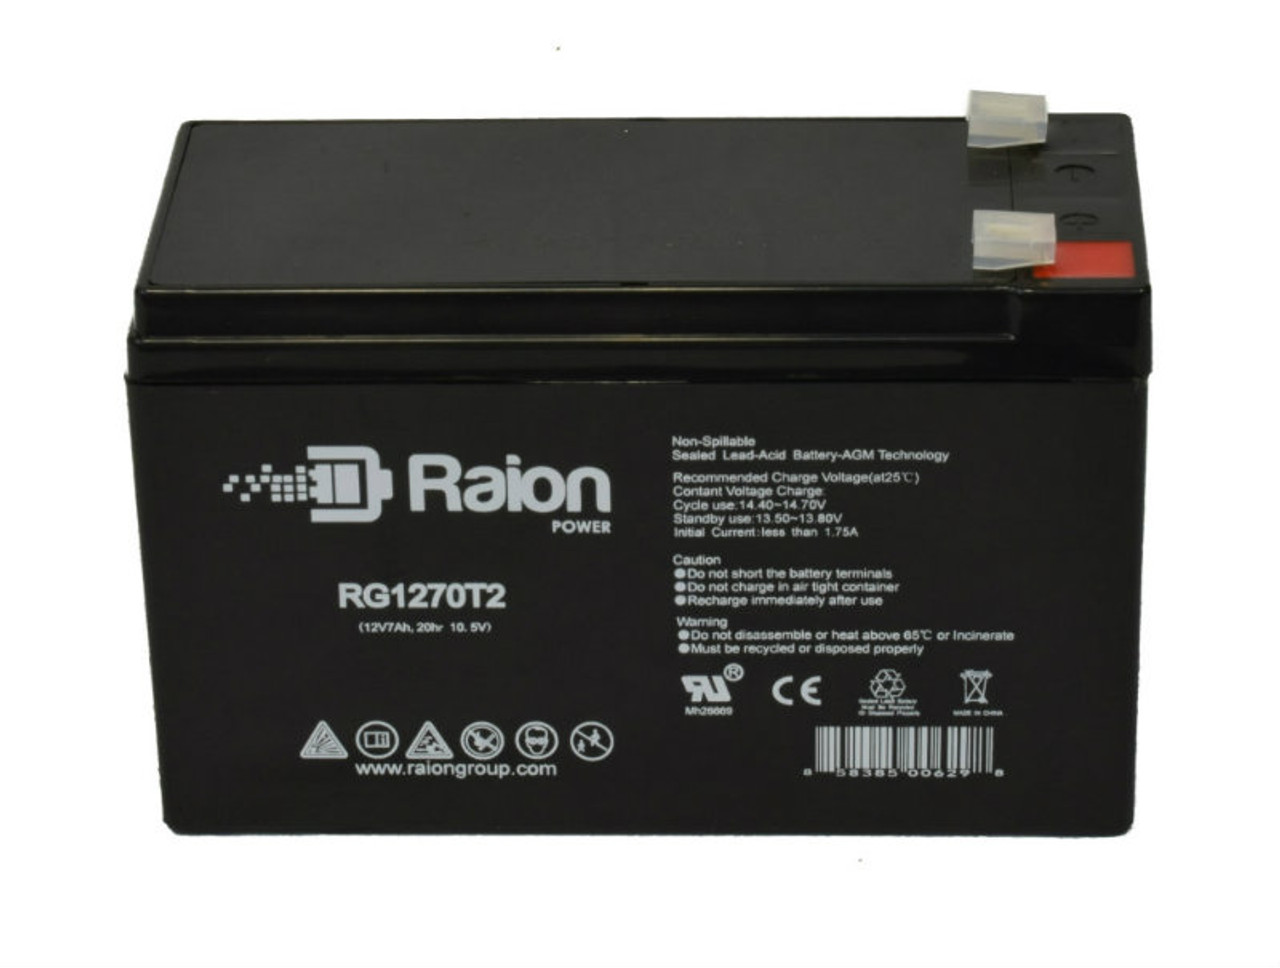 Raion Power RG1270T2 12V 7Ah Lead Acid Battery for RPower OGIV1270LP